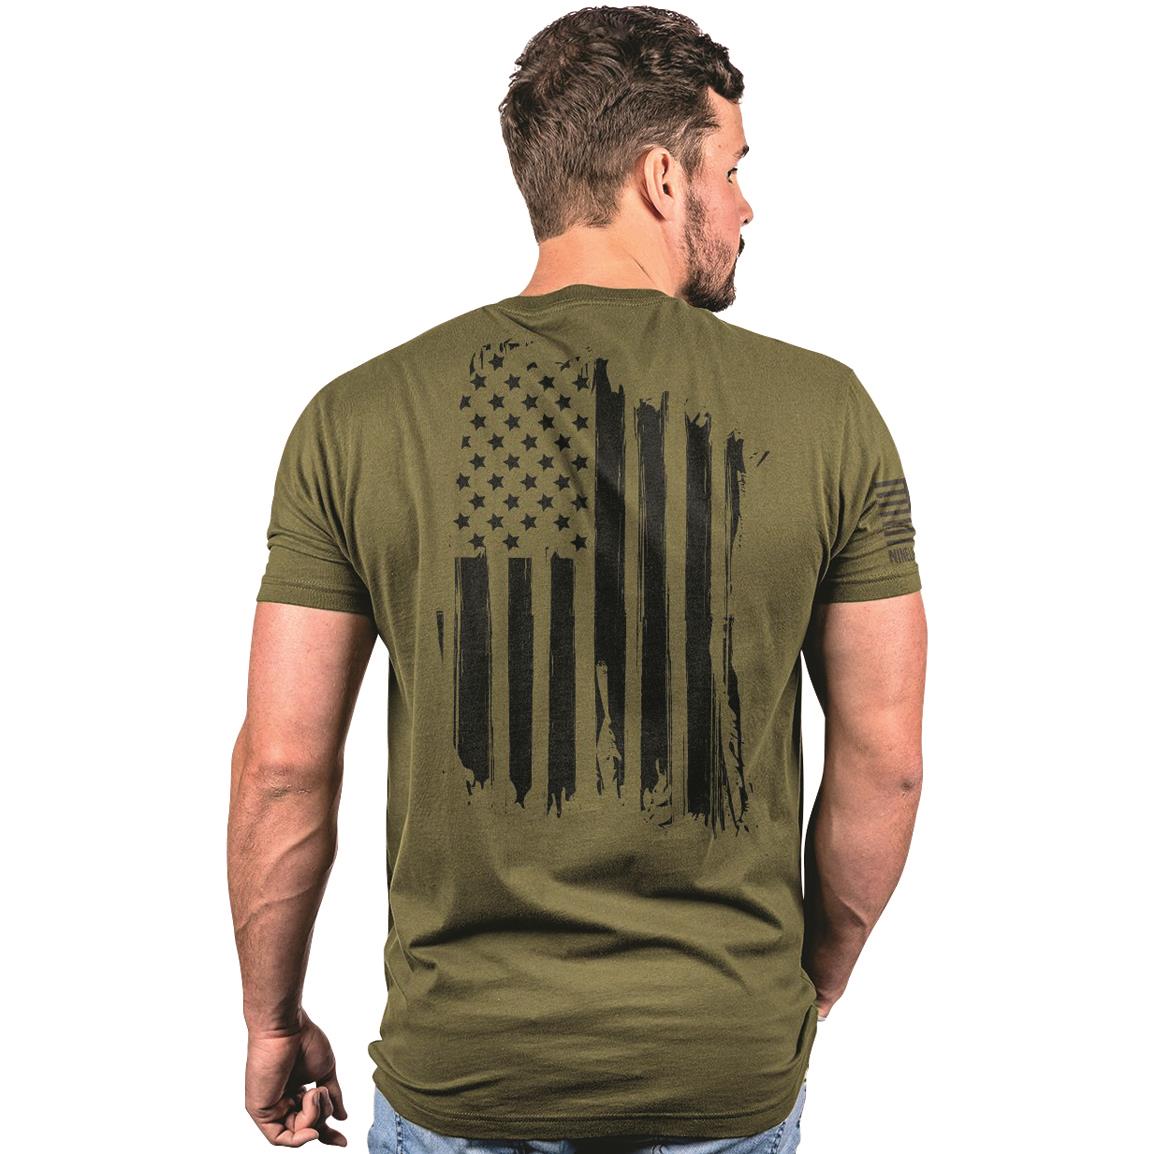 Nine Line America Tshirt | Sportsman's Guide